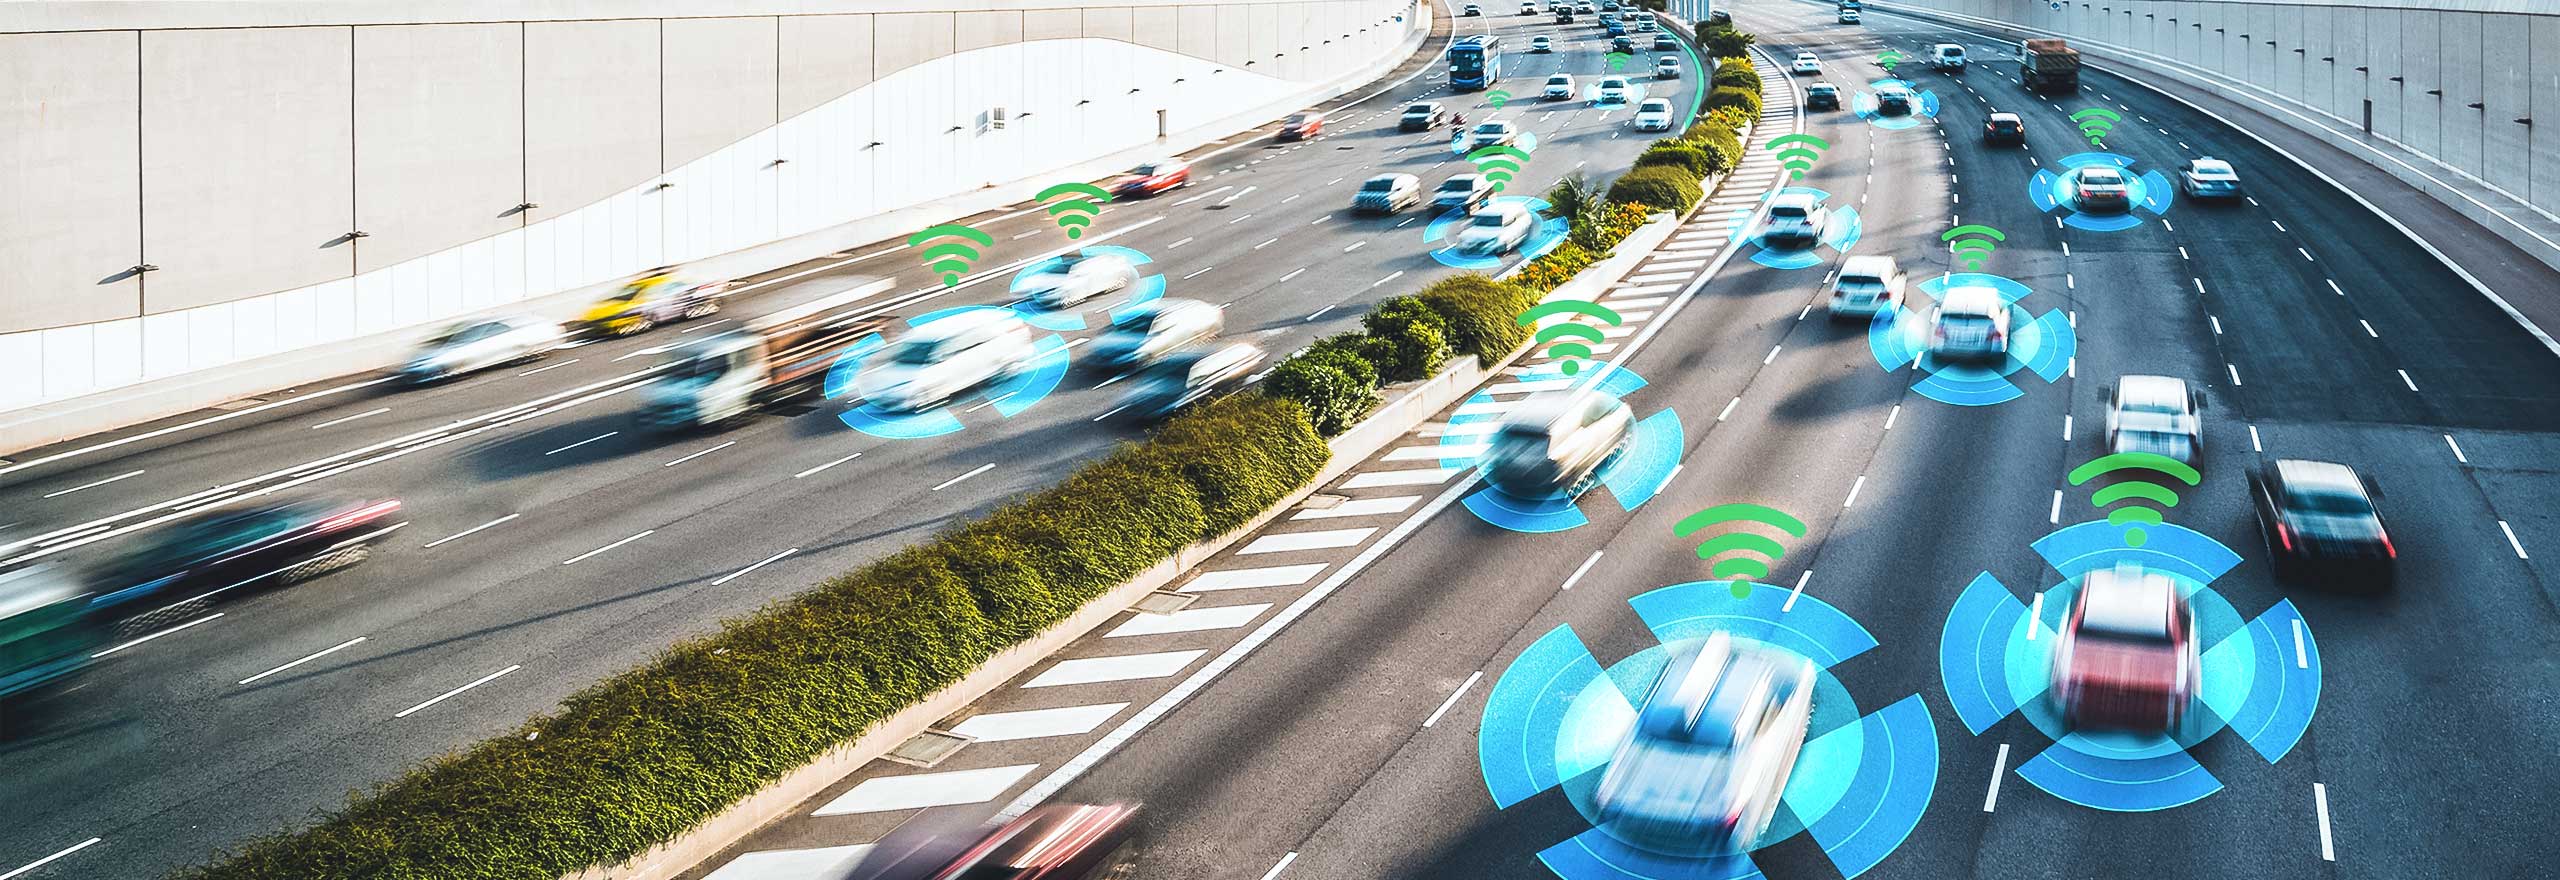 Voitures sur autoroute analysées par les solutions de perception de véhicules autonomes d’Hexagon